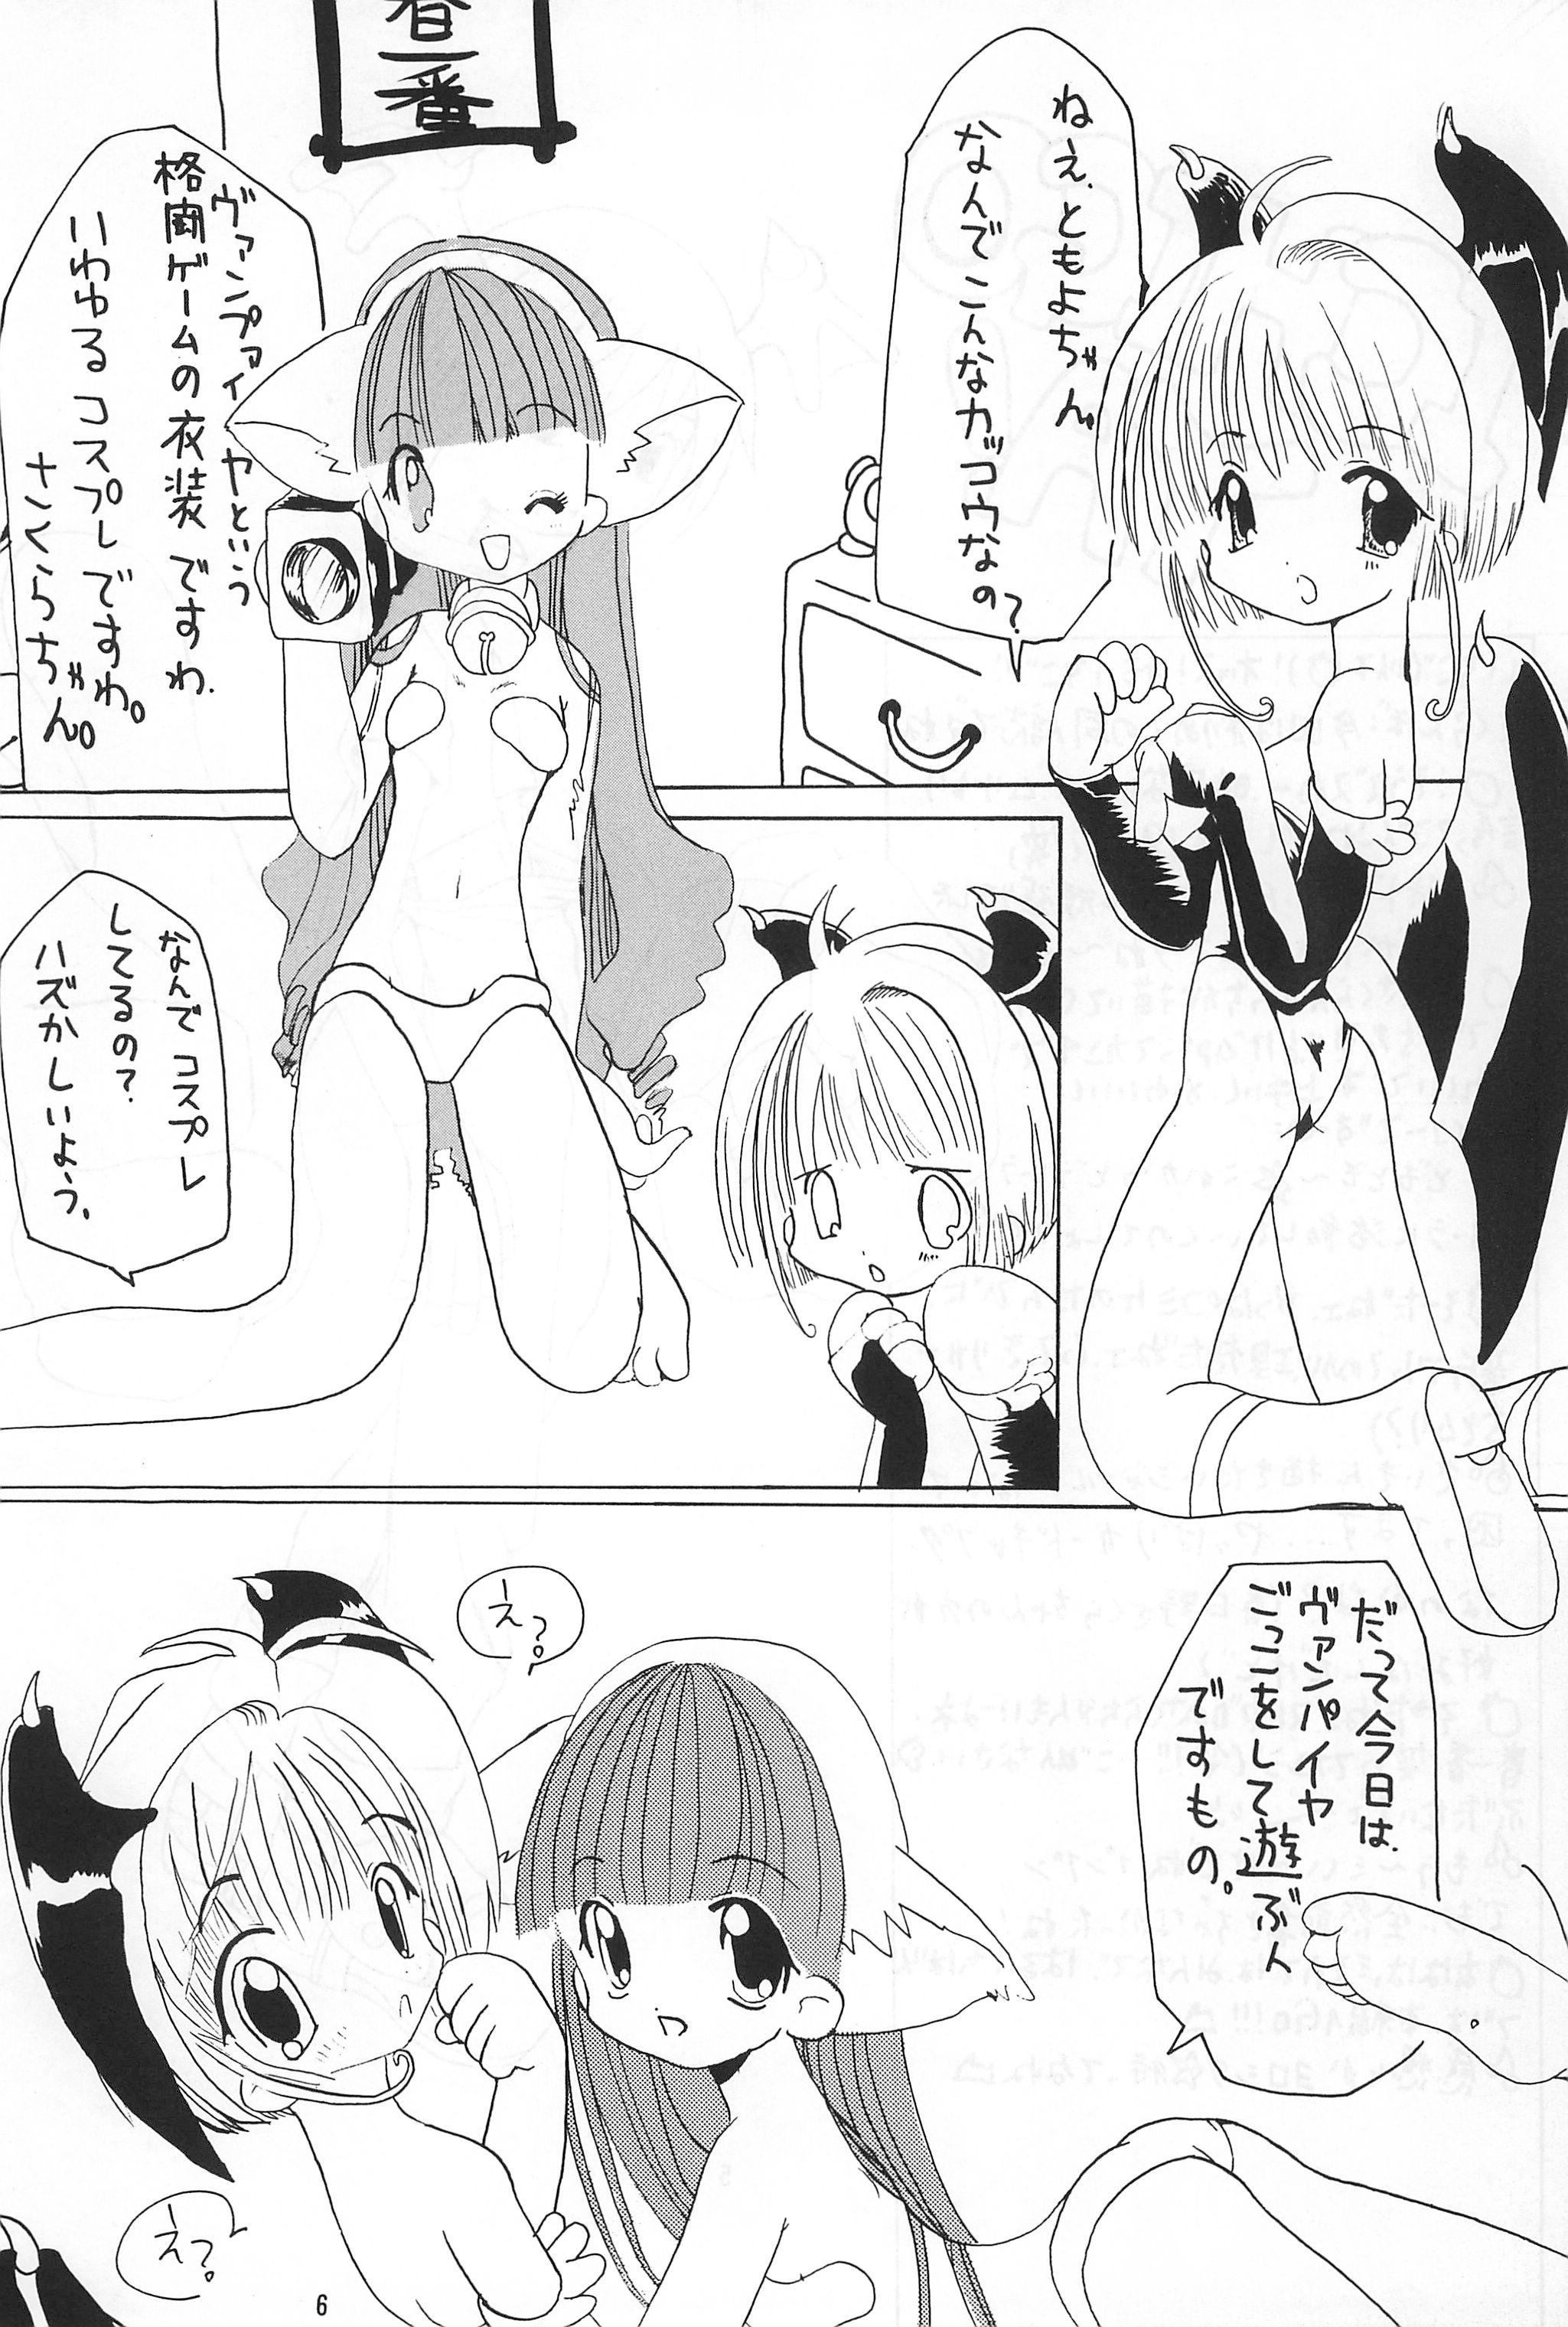 Flashing Sakura Book - Cardcaptor sakura 3way - Page 6